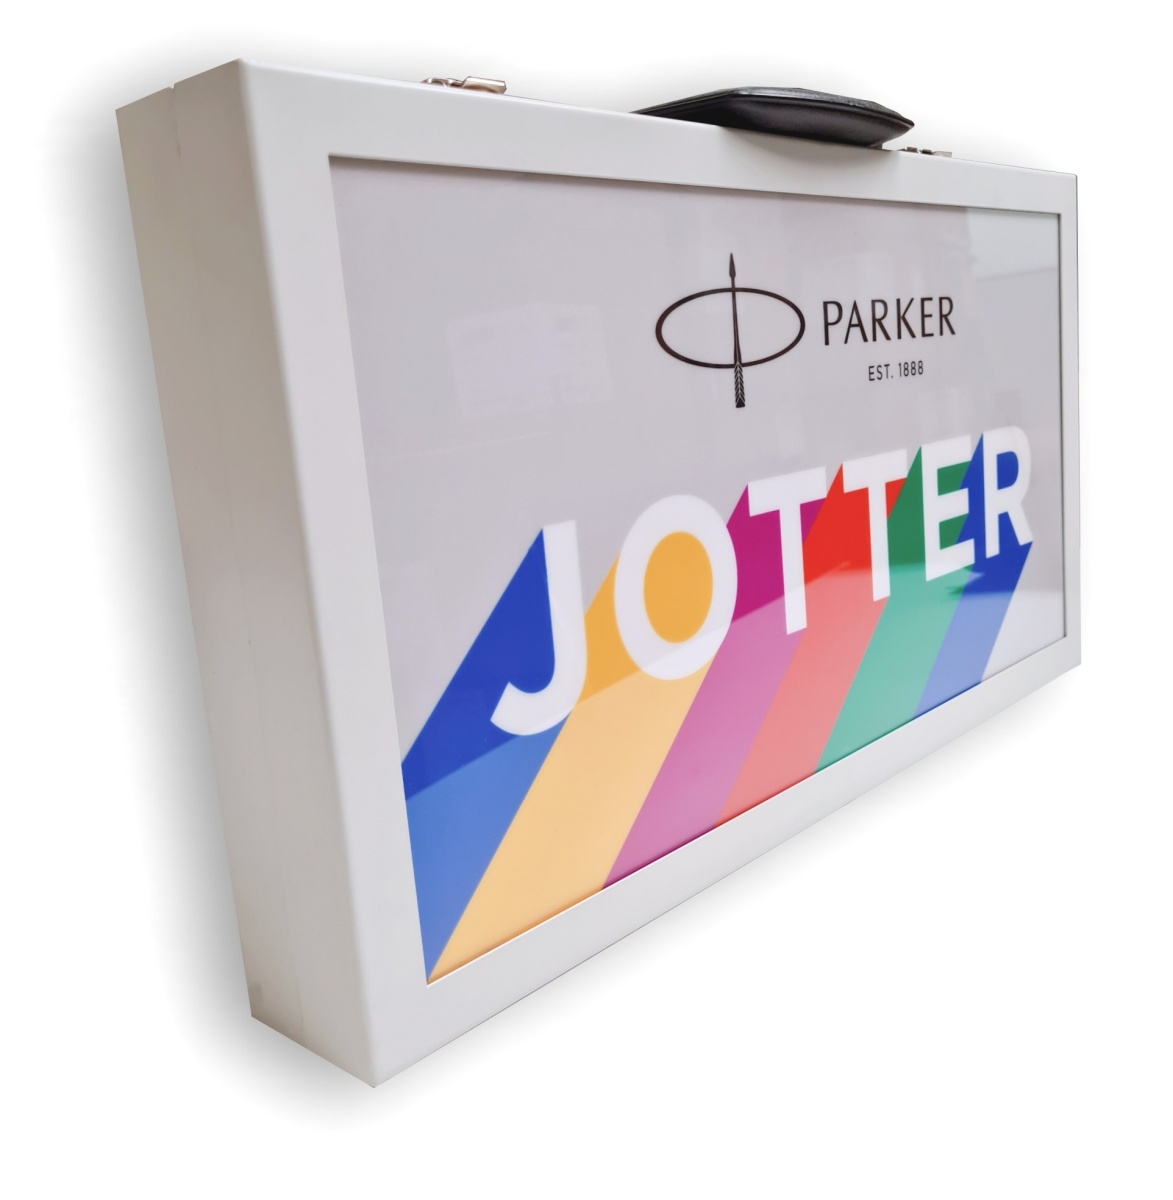  Лимитированный юбилейный набор Parker Jotter Pantone 54, чемодан с 57-ю ручками, фото 4